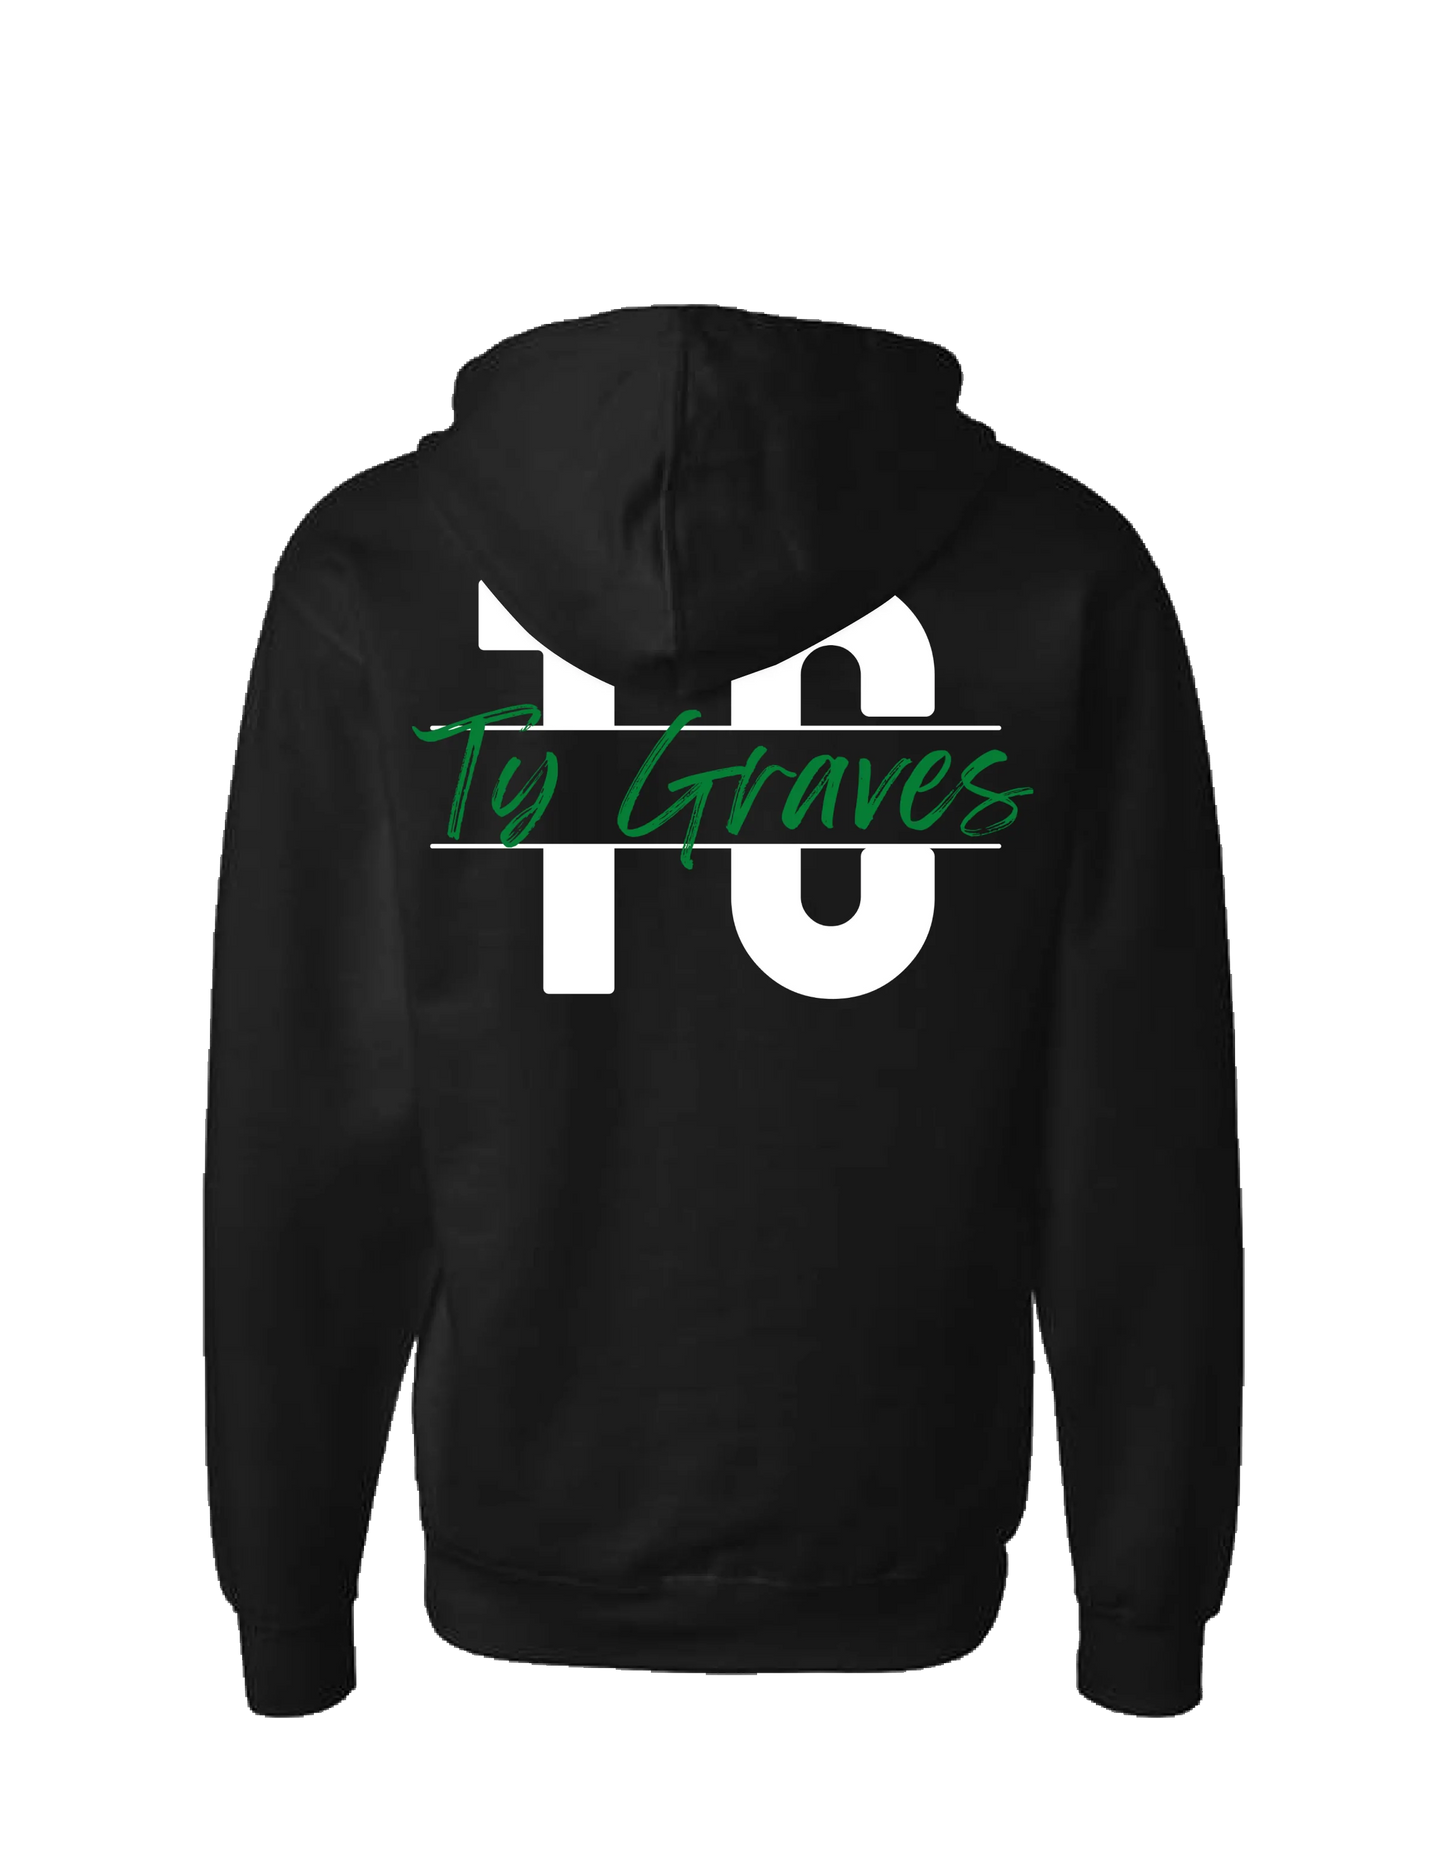 Ty Graves - Logo 2 - Black Zip Up Hoodie